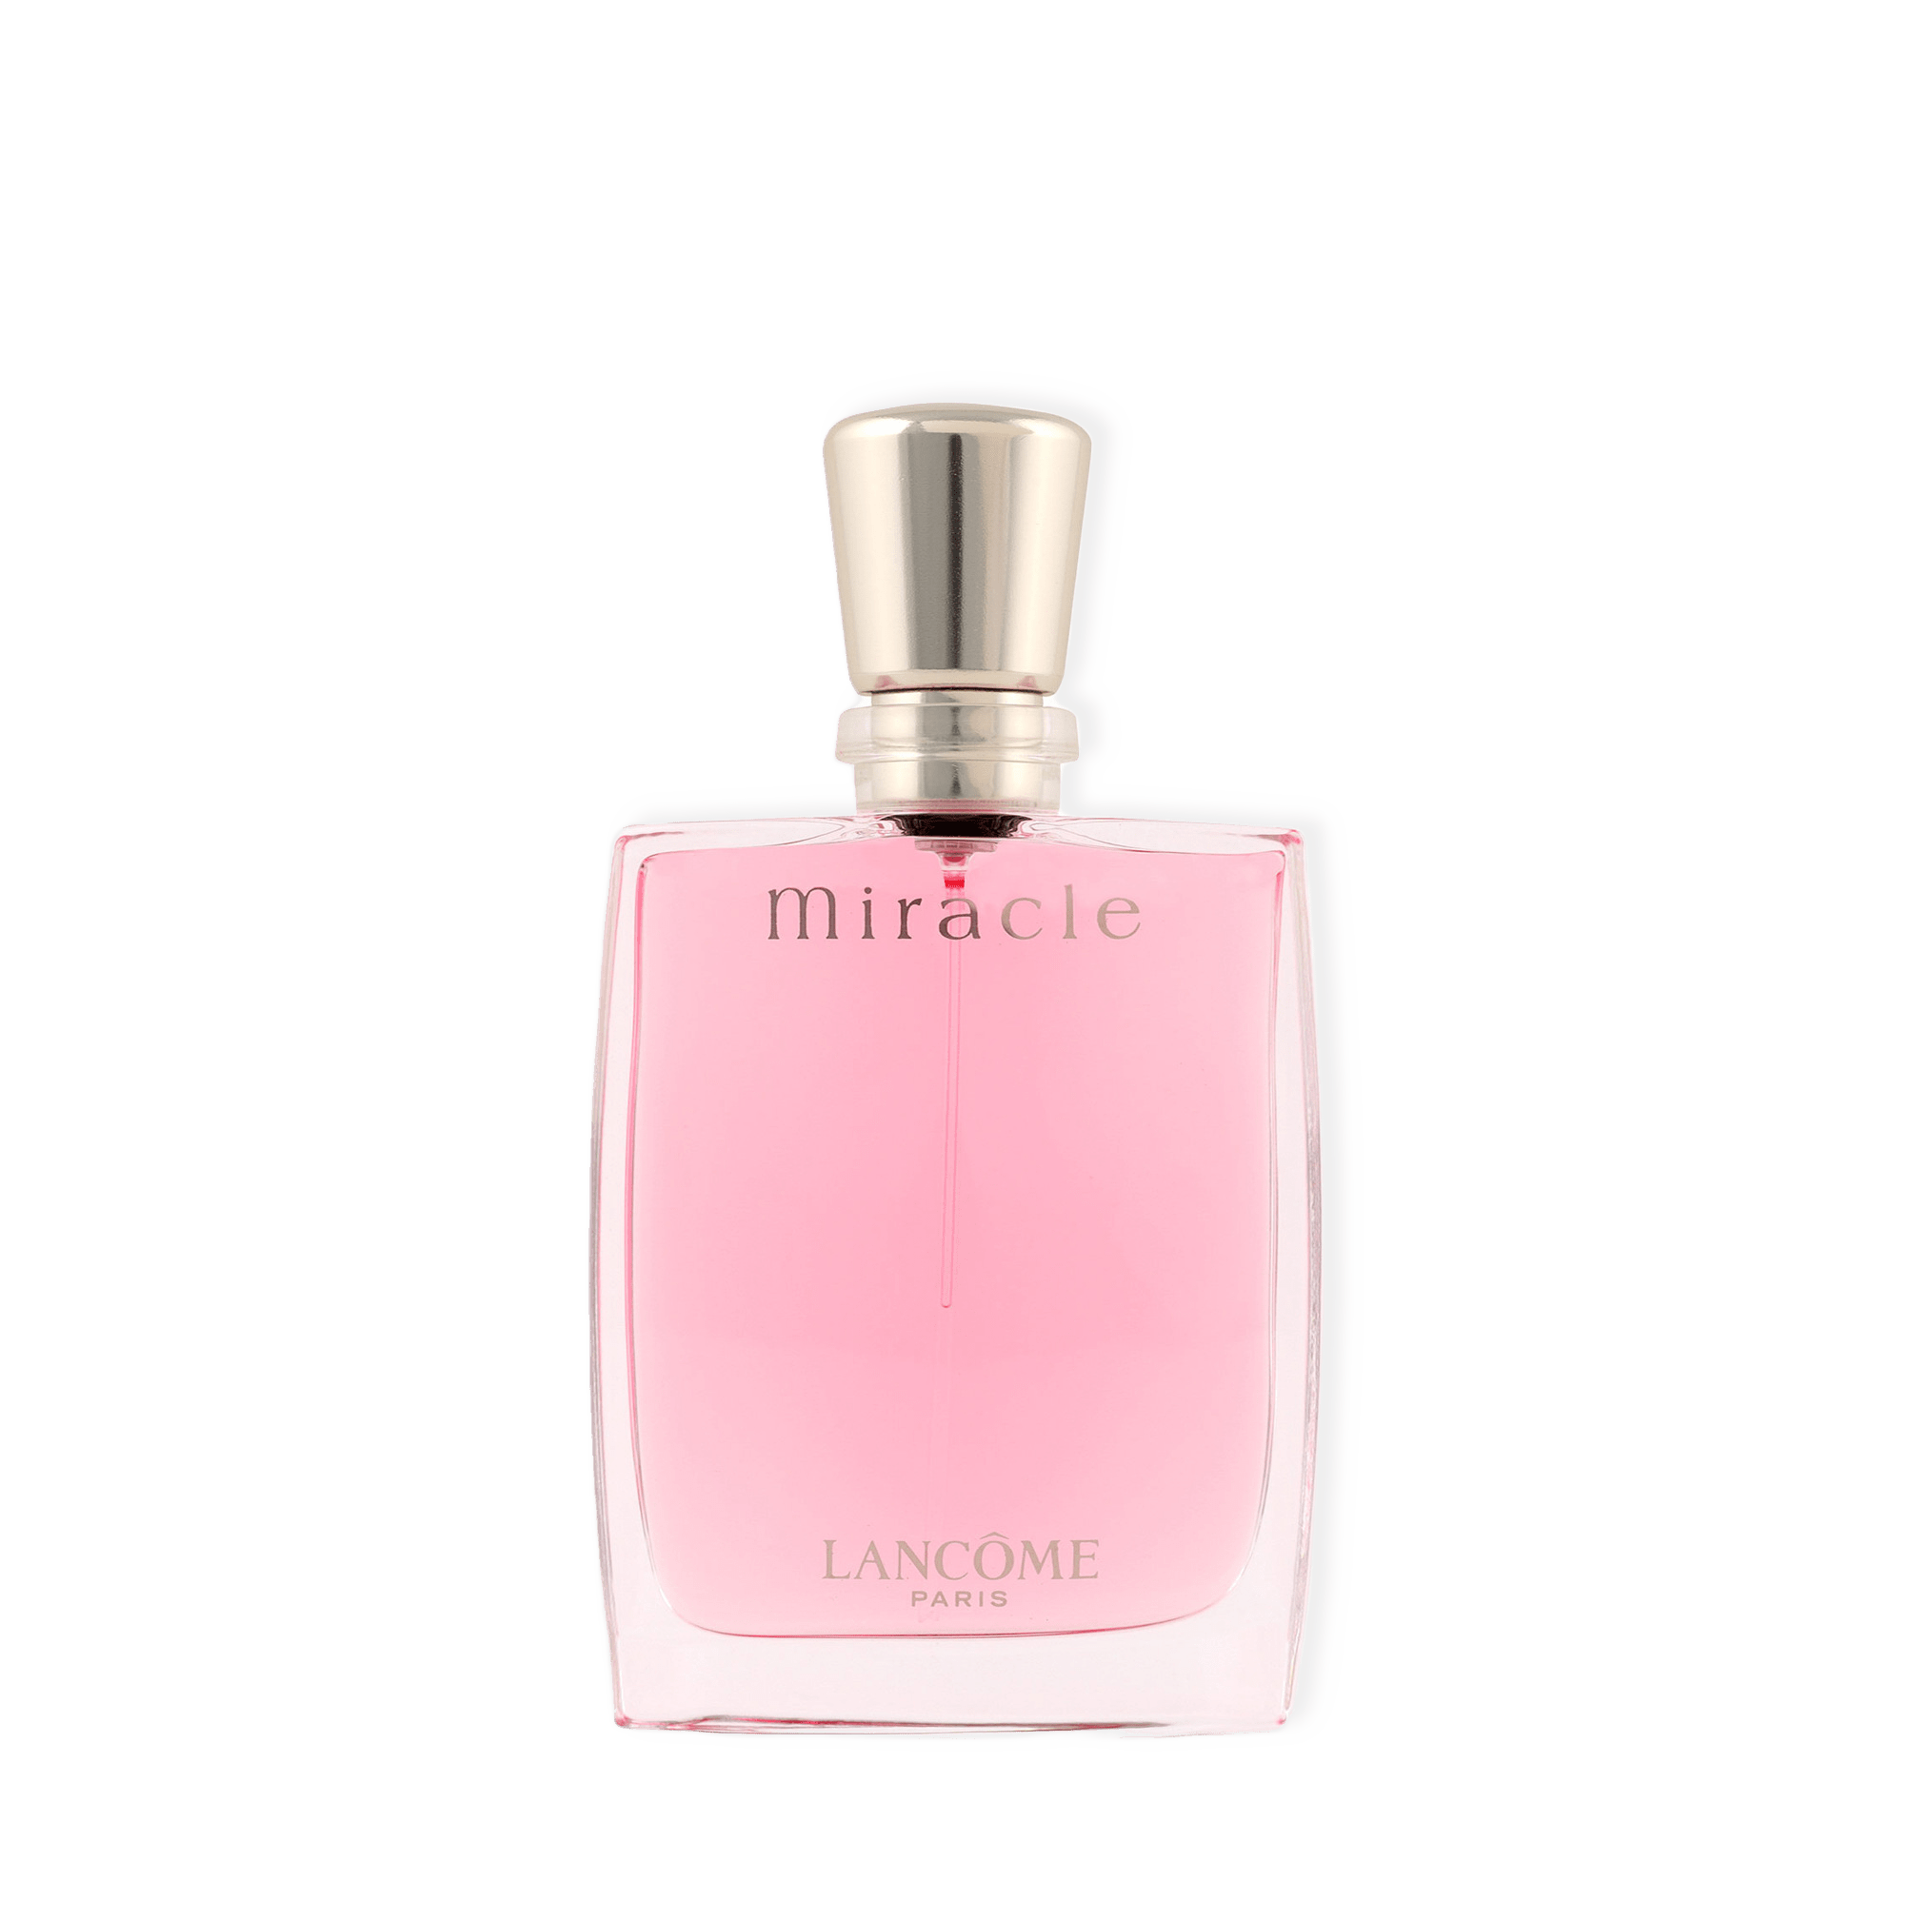 Miracle Eau de Parfum från Lancôme